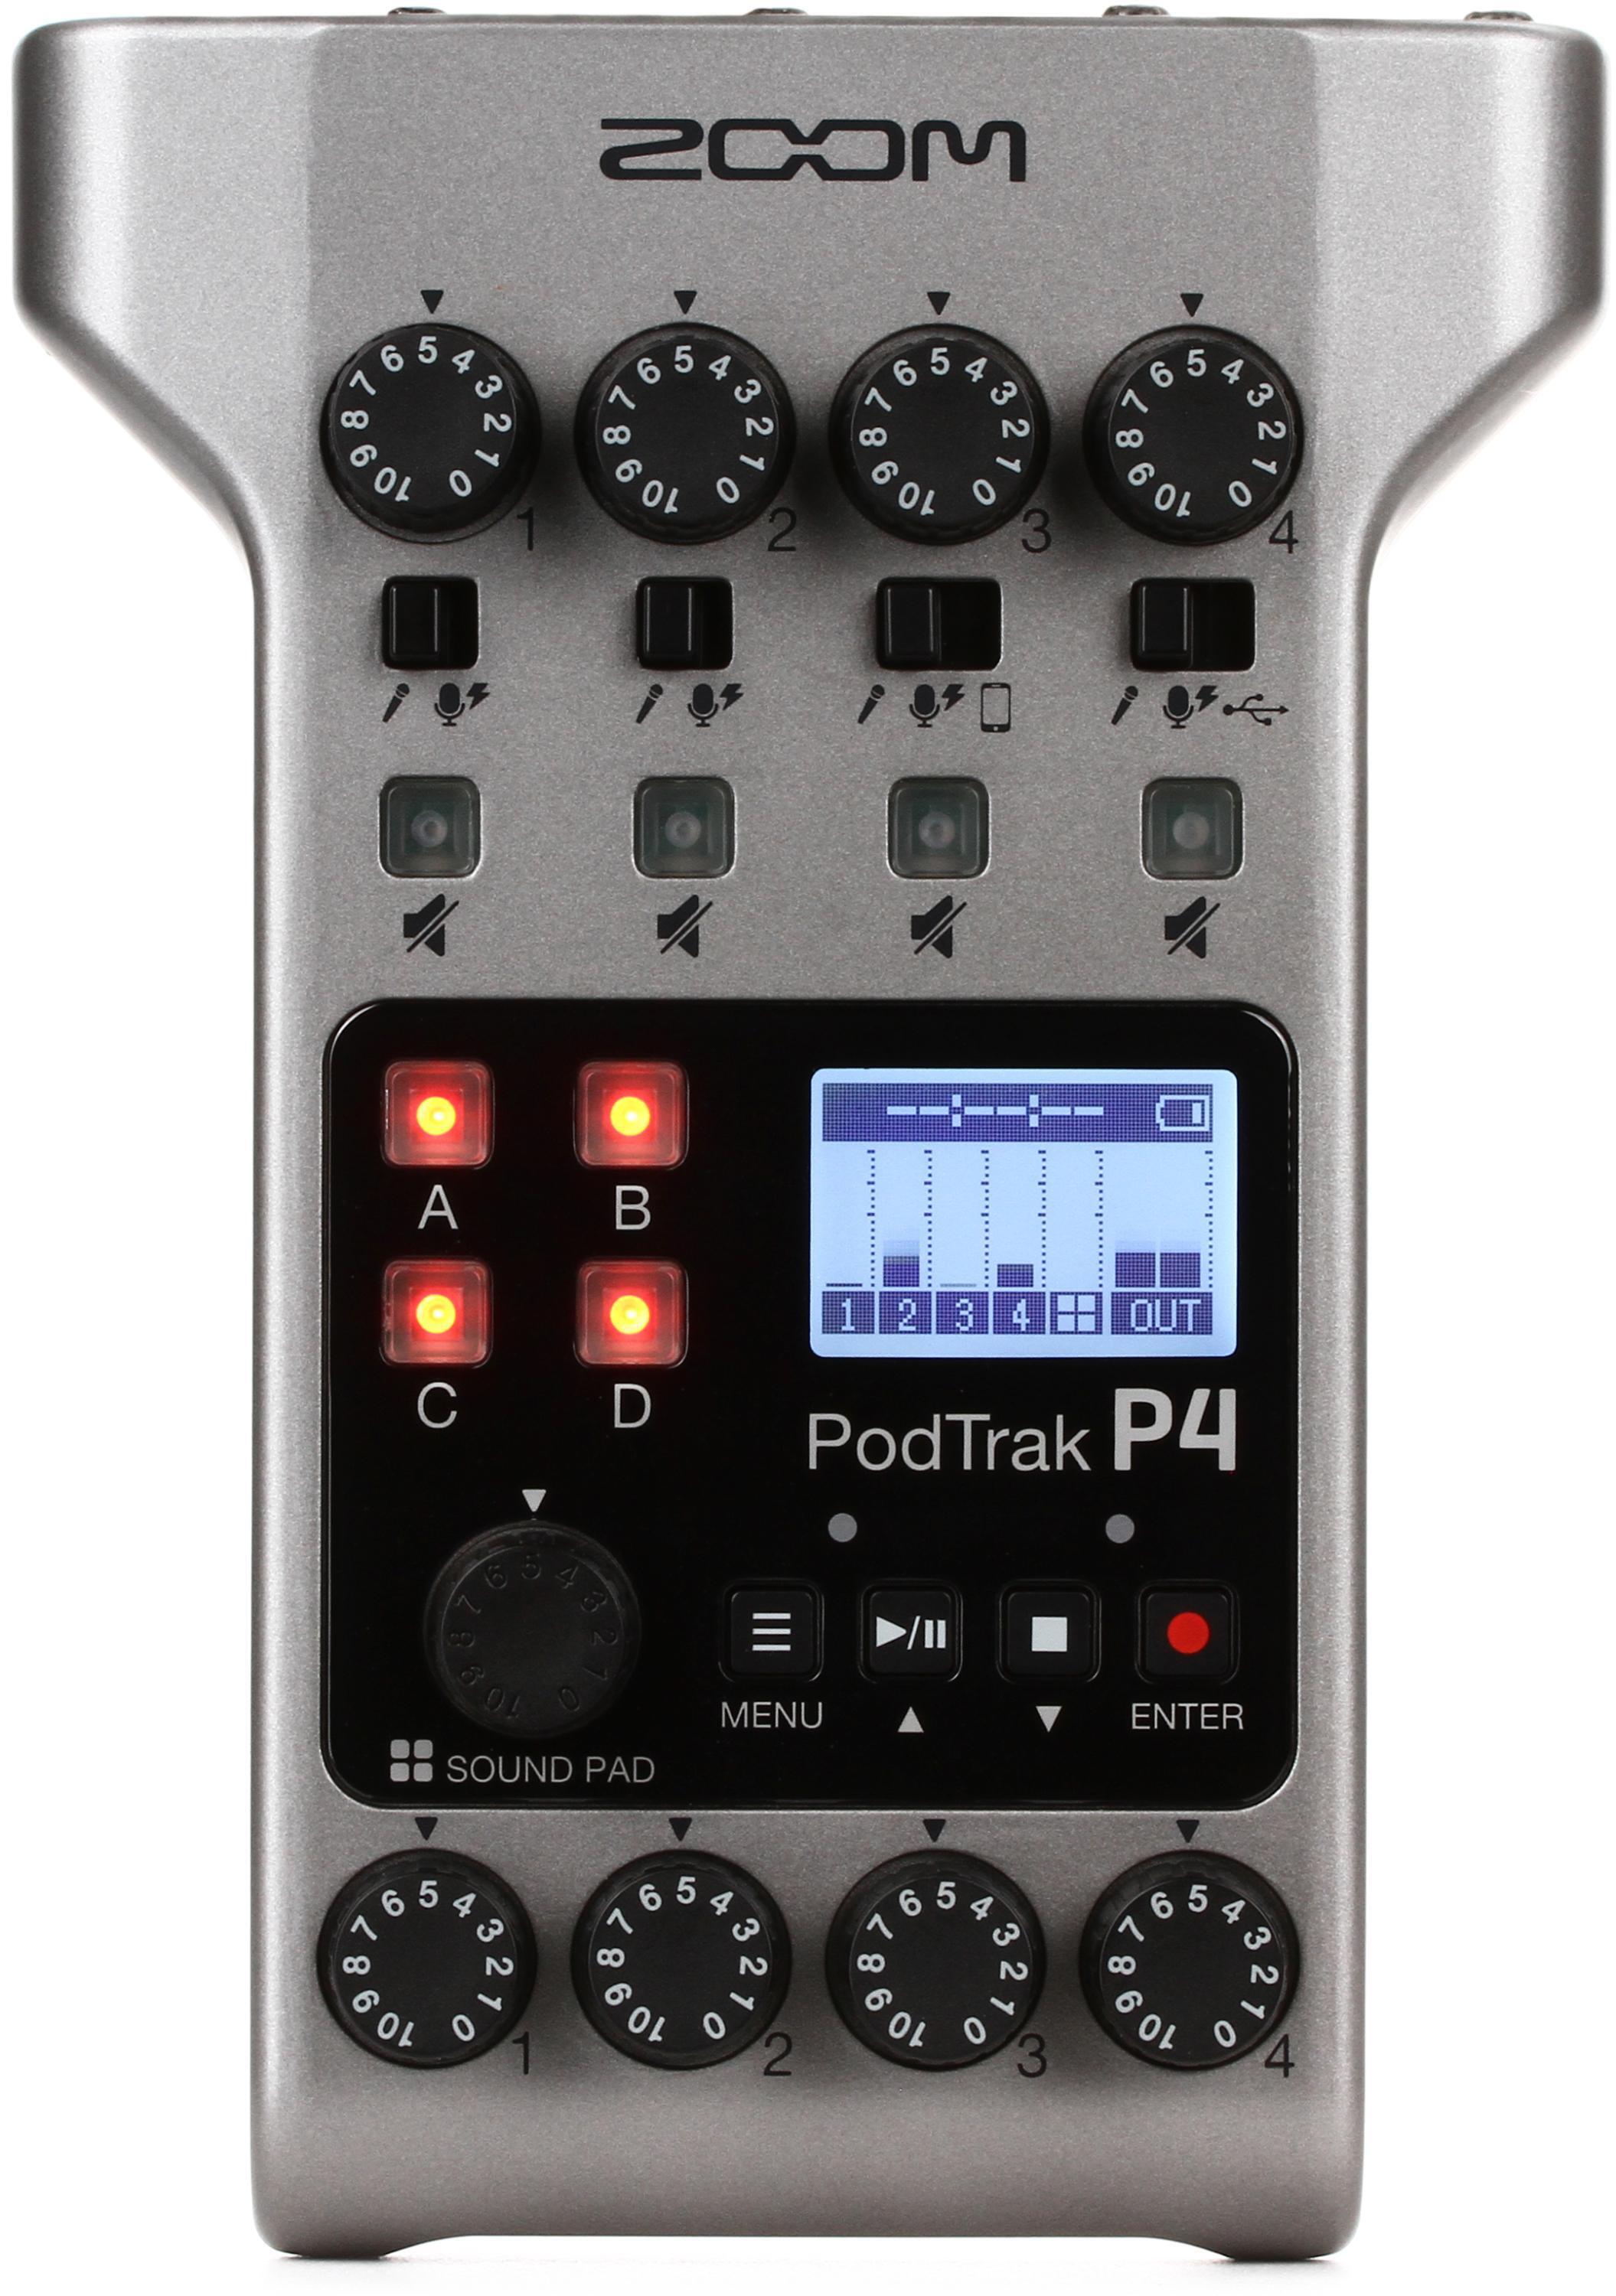 Bundled Item: Zoom PodTrak P4 4-input Ultimate Recorder for Podcasting